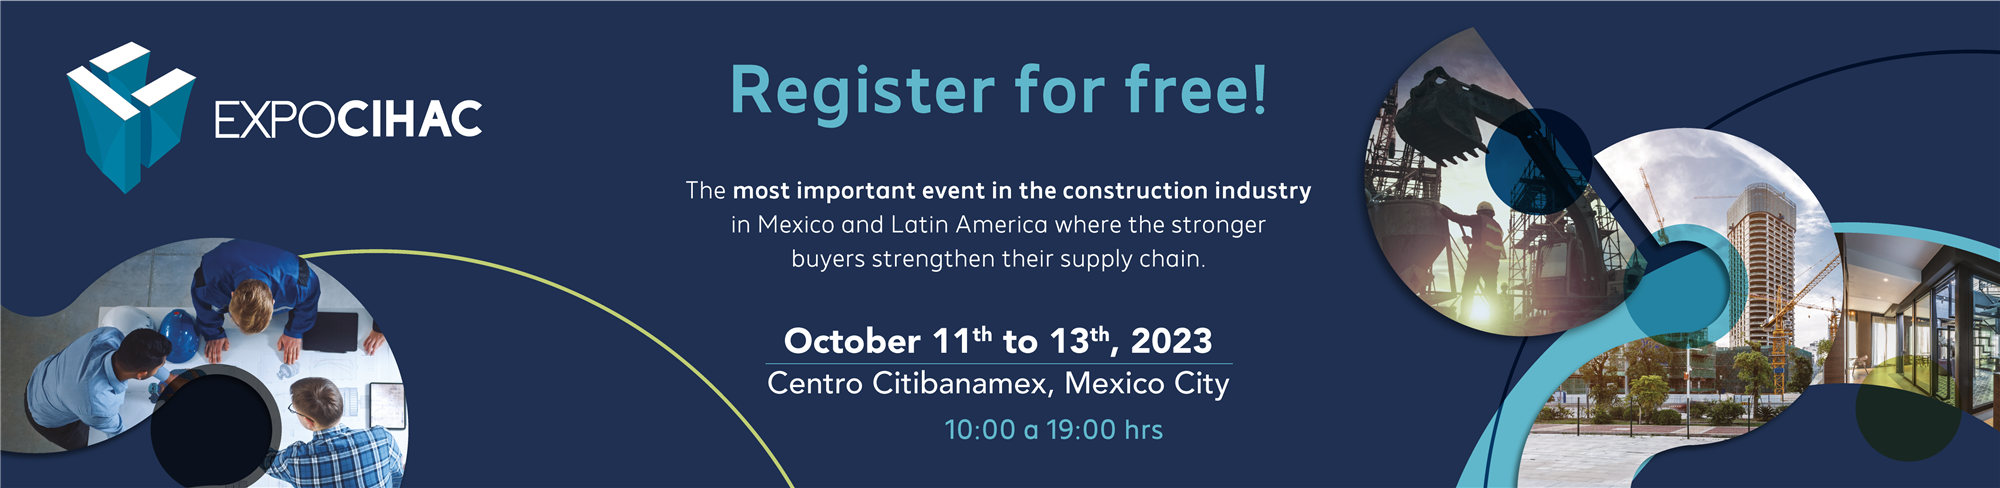 EXPO CIHAC 2023 Mexico invitation from Dozan Mosaic And Tiles